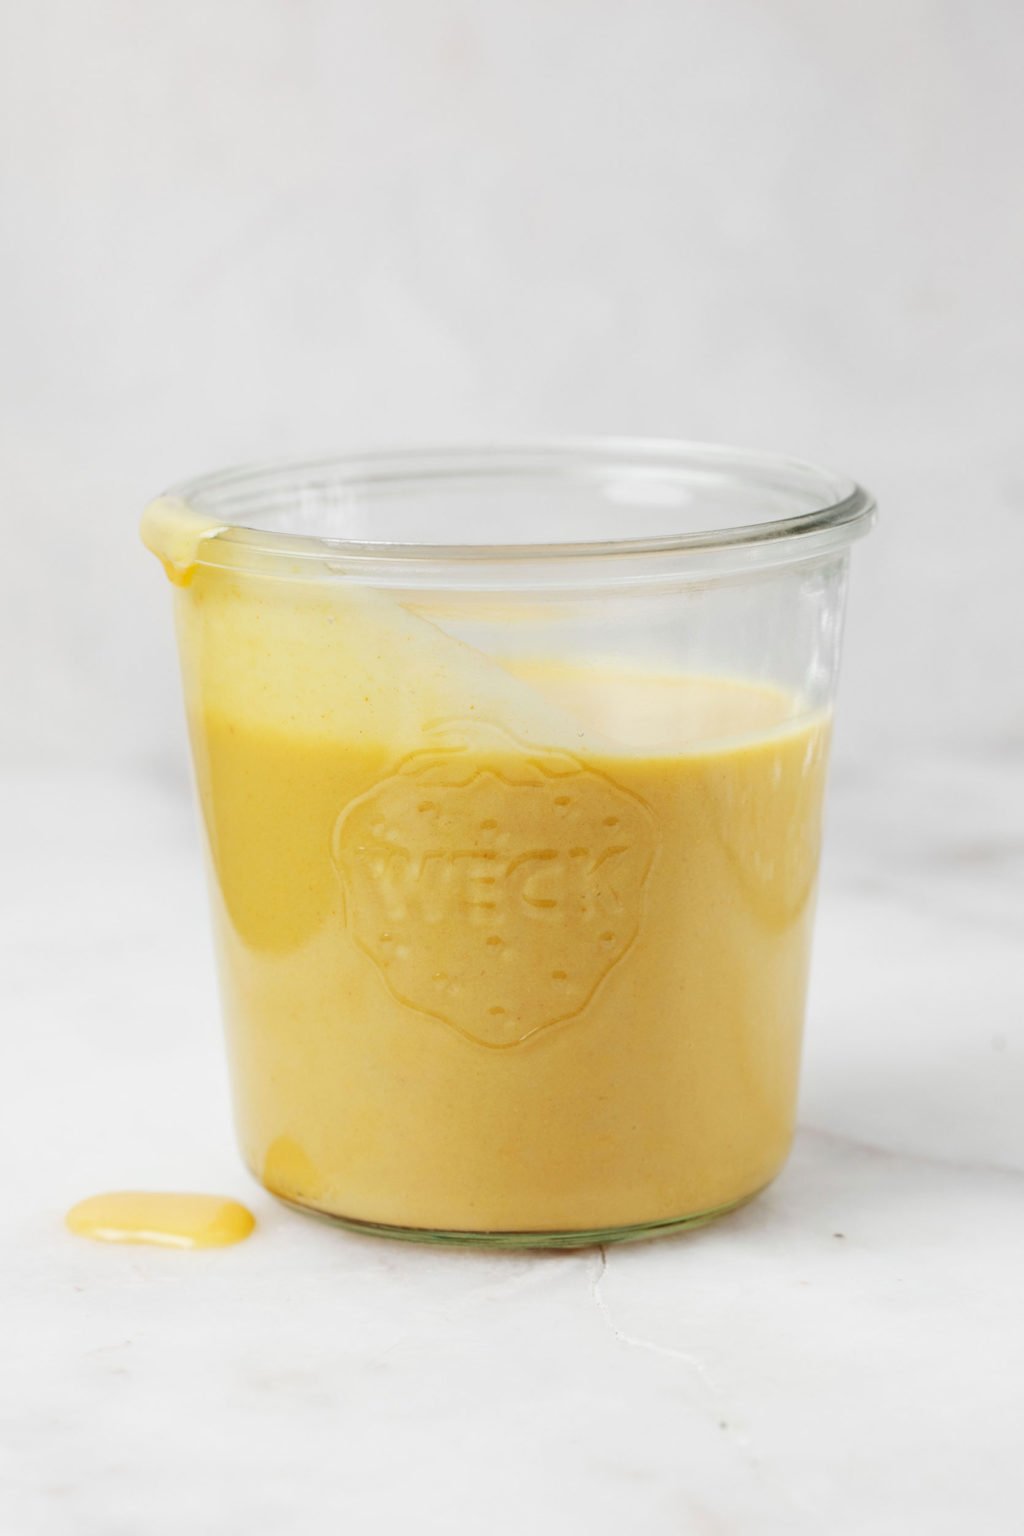 El tarro de cristal contiene una salsa vegana amarilla con queso cheddar.